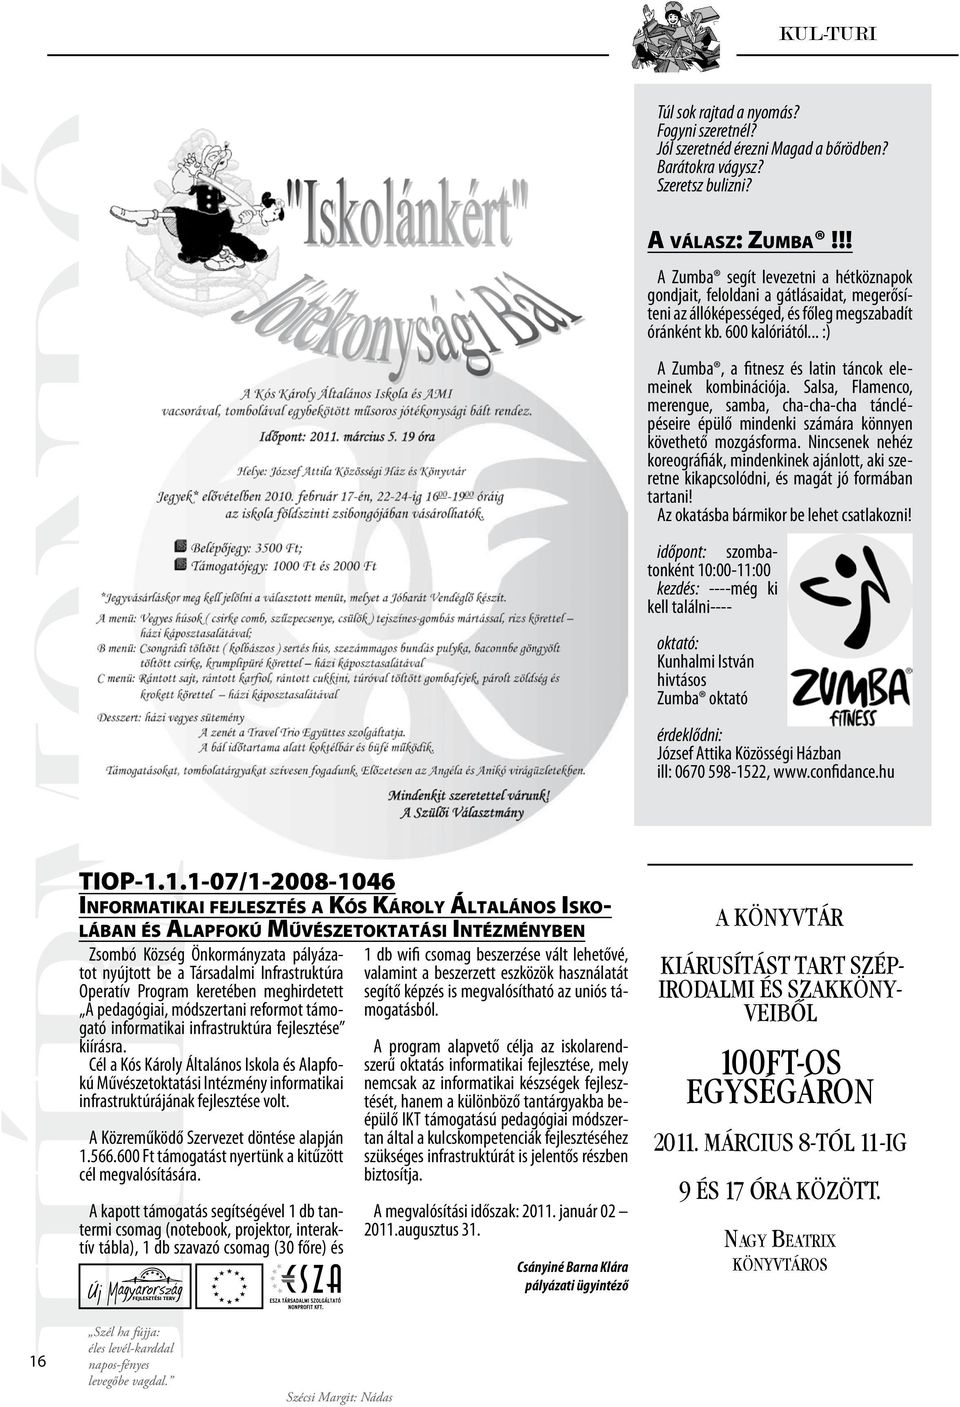 1.1-07/1-2008-1046 Informatikai fejlesztés a Kós Károly Általános Isko - lában és Alapfokú Művészetoktatási Intézményben Zsombó Község Önkormányzata pályázatot nyújtott be a Társadalmi Infrastruktúra